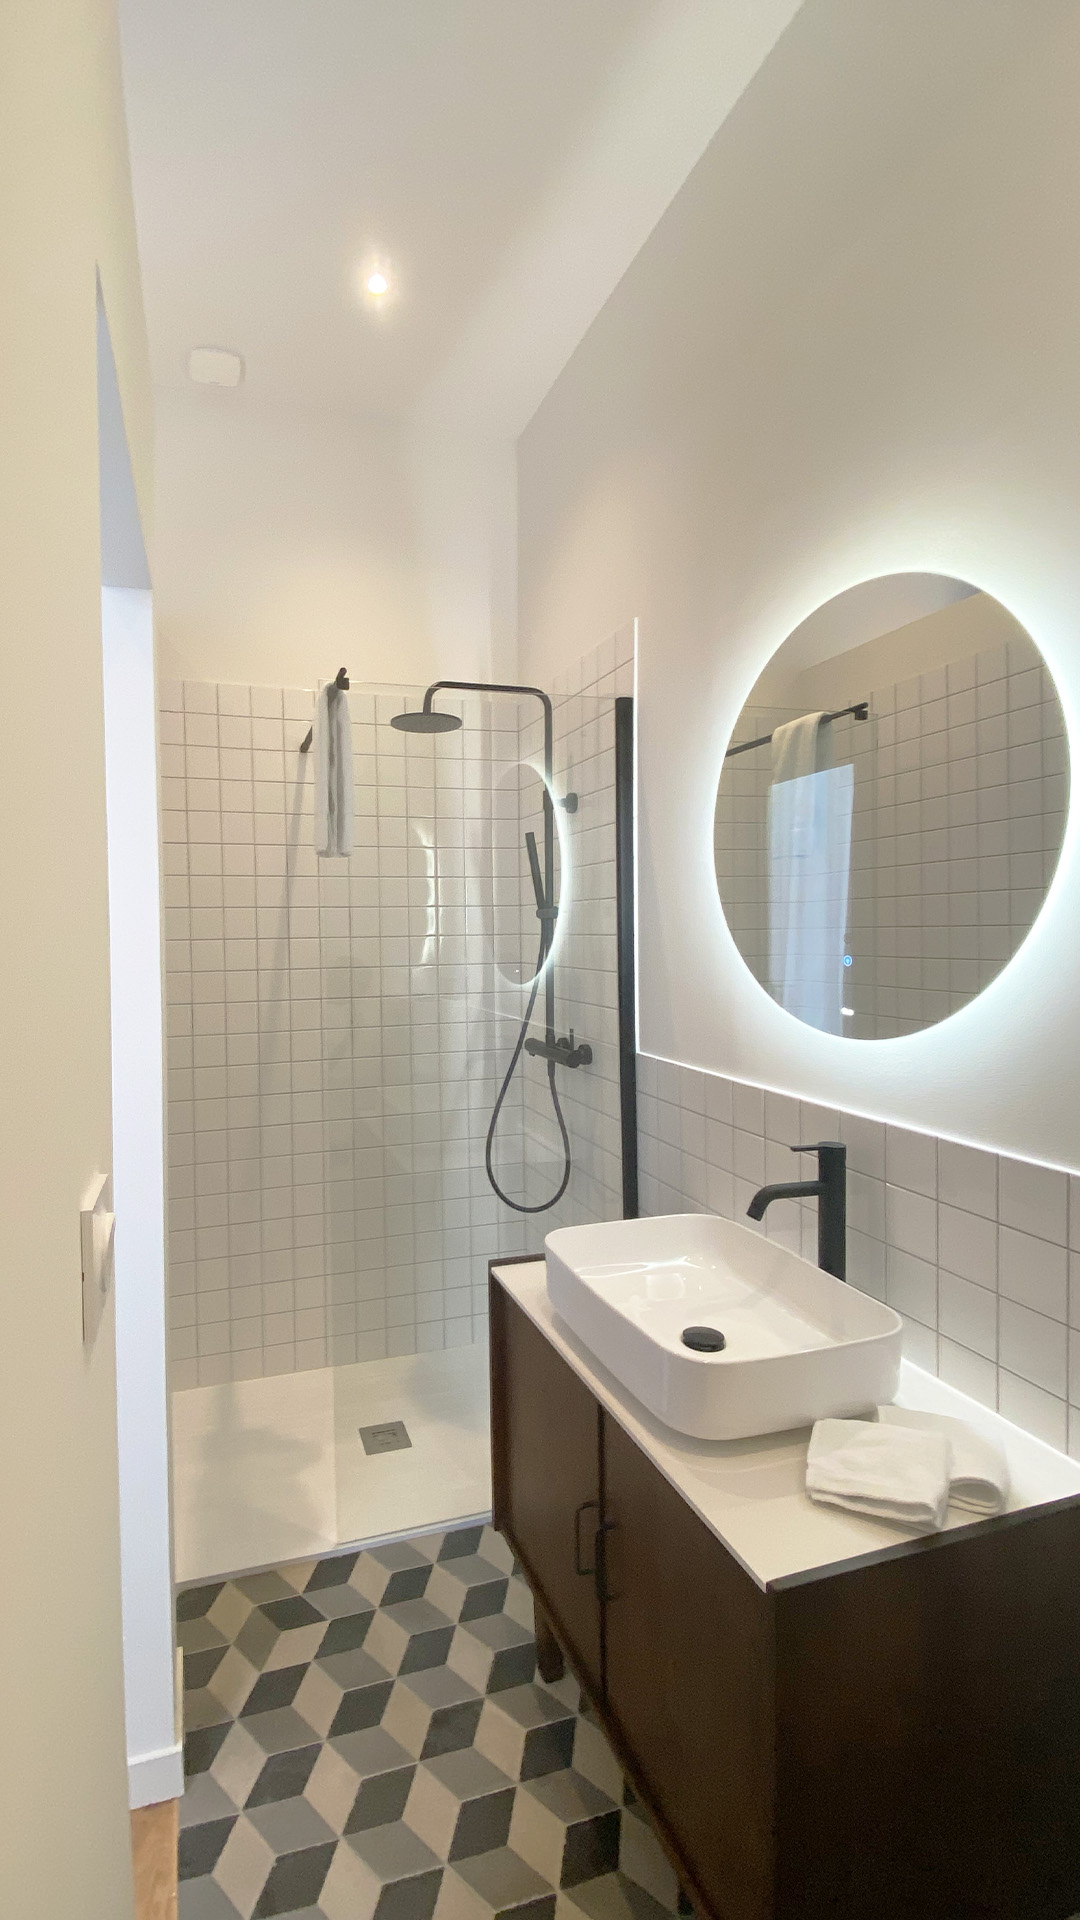 Intérieur d'une salle de bain moderne et épurée - Appartement Vacances Sète - Les Clés Secrètes